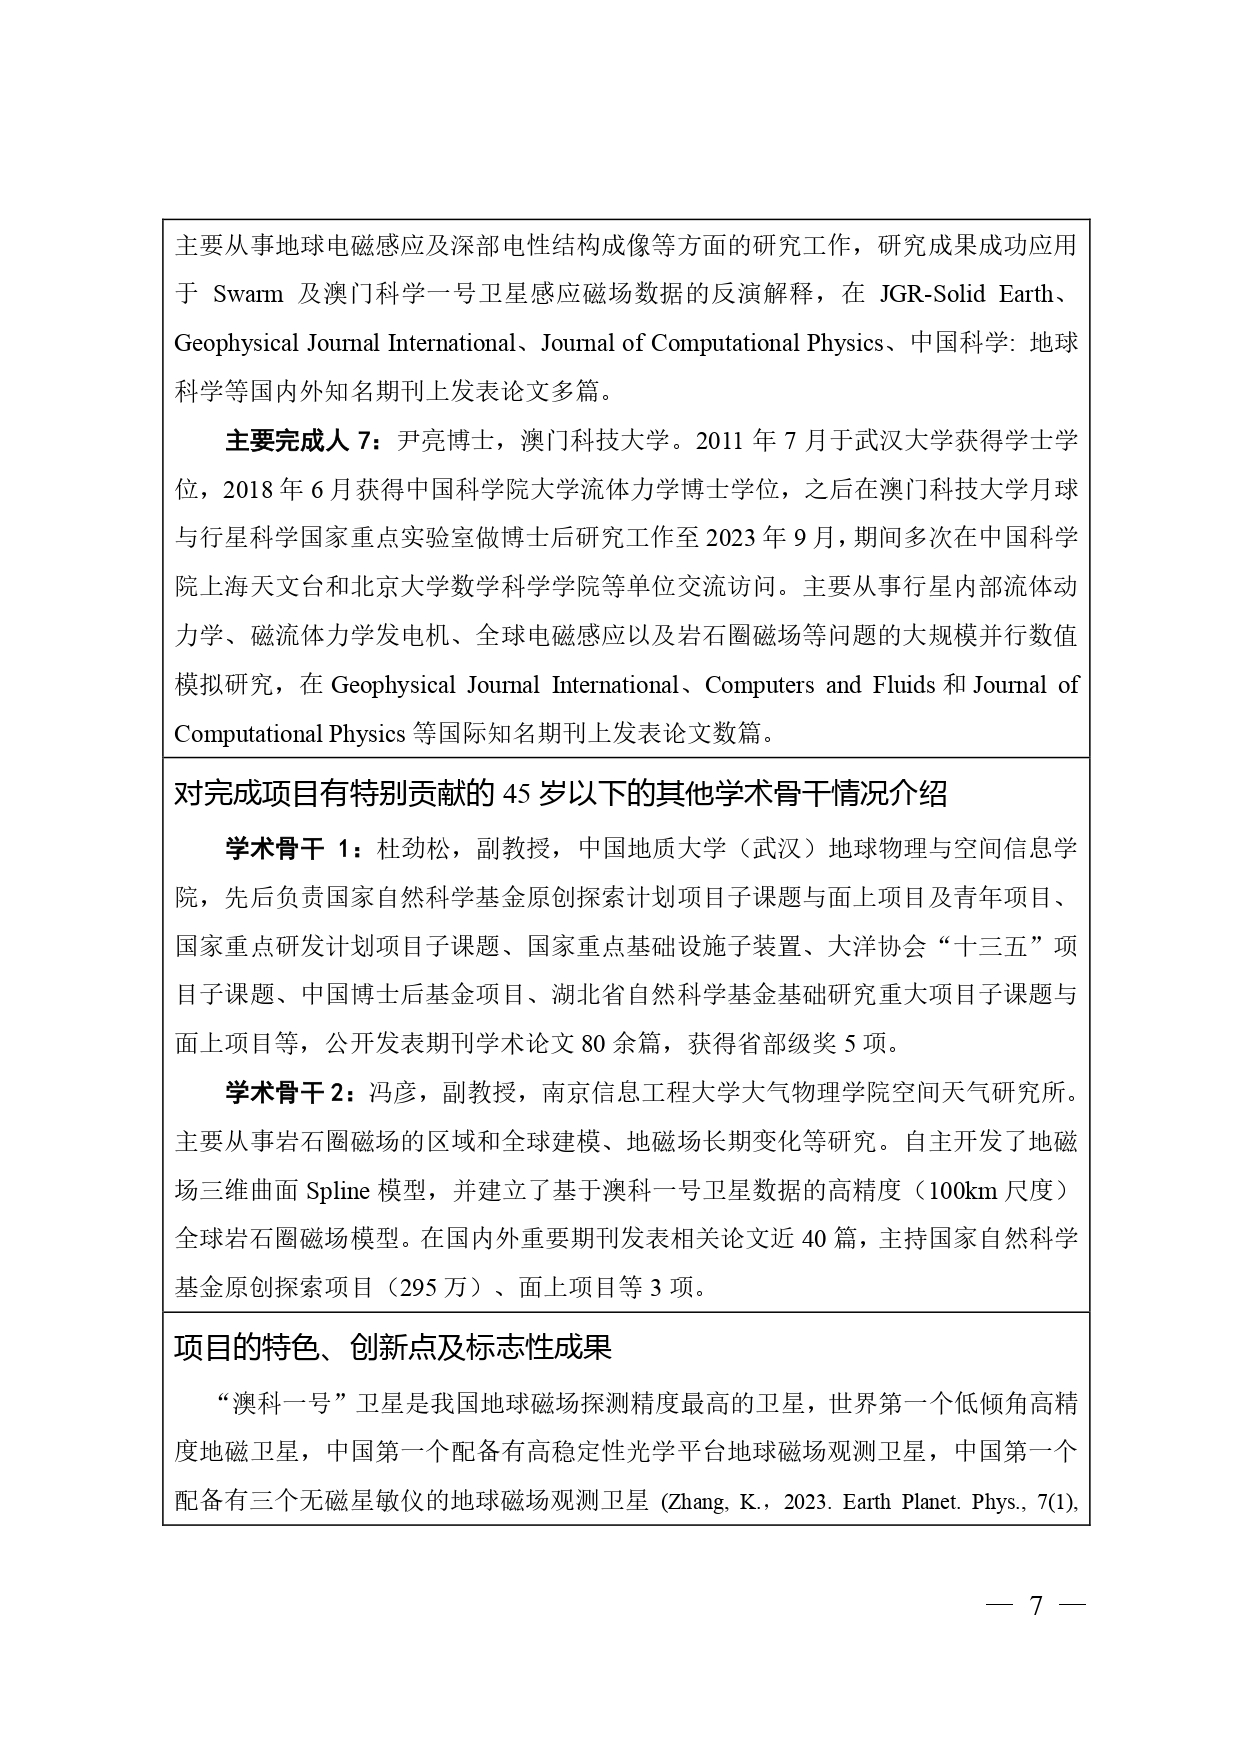 中国高等学校十大科技进展申报表 张可可终版3 page 0007